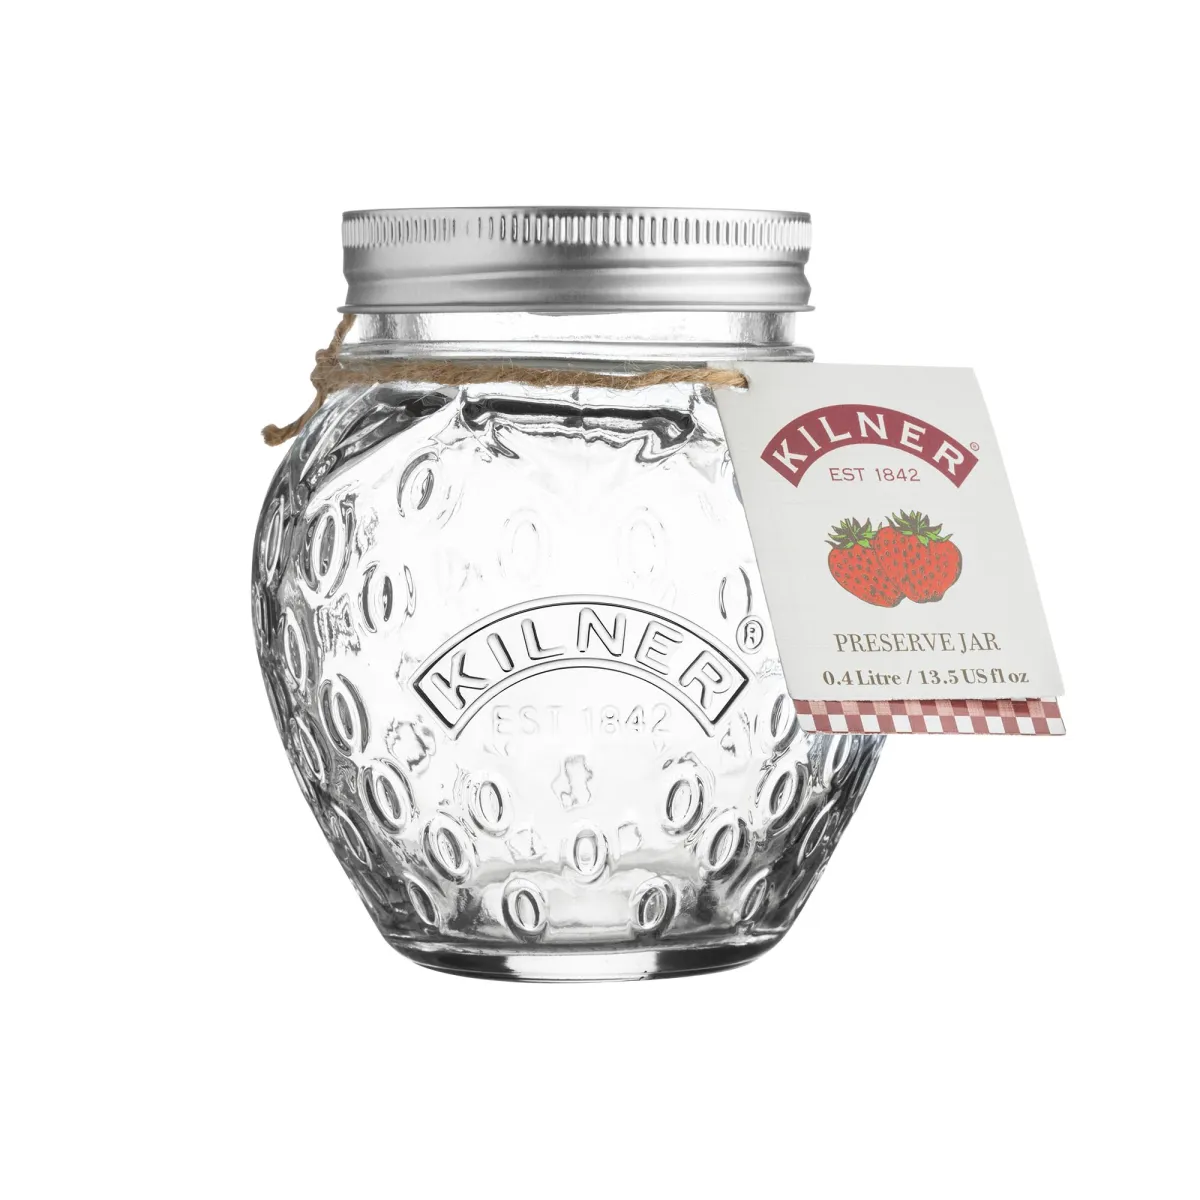 Kilner Einmachglas mit Schraubverschluss in Erdbeere-Form 0.4 Liter